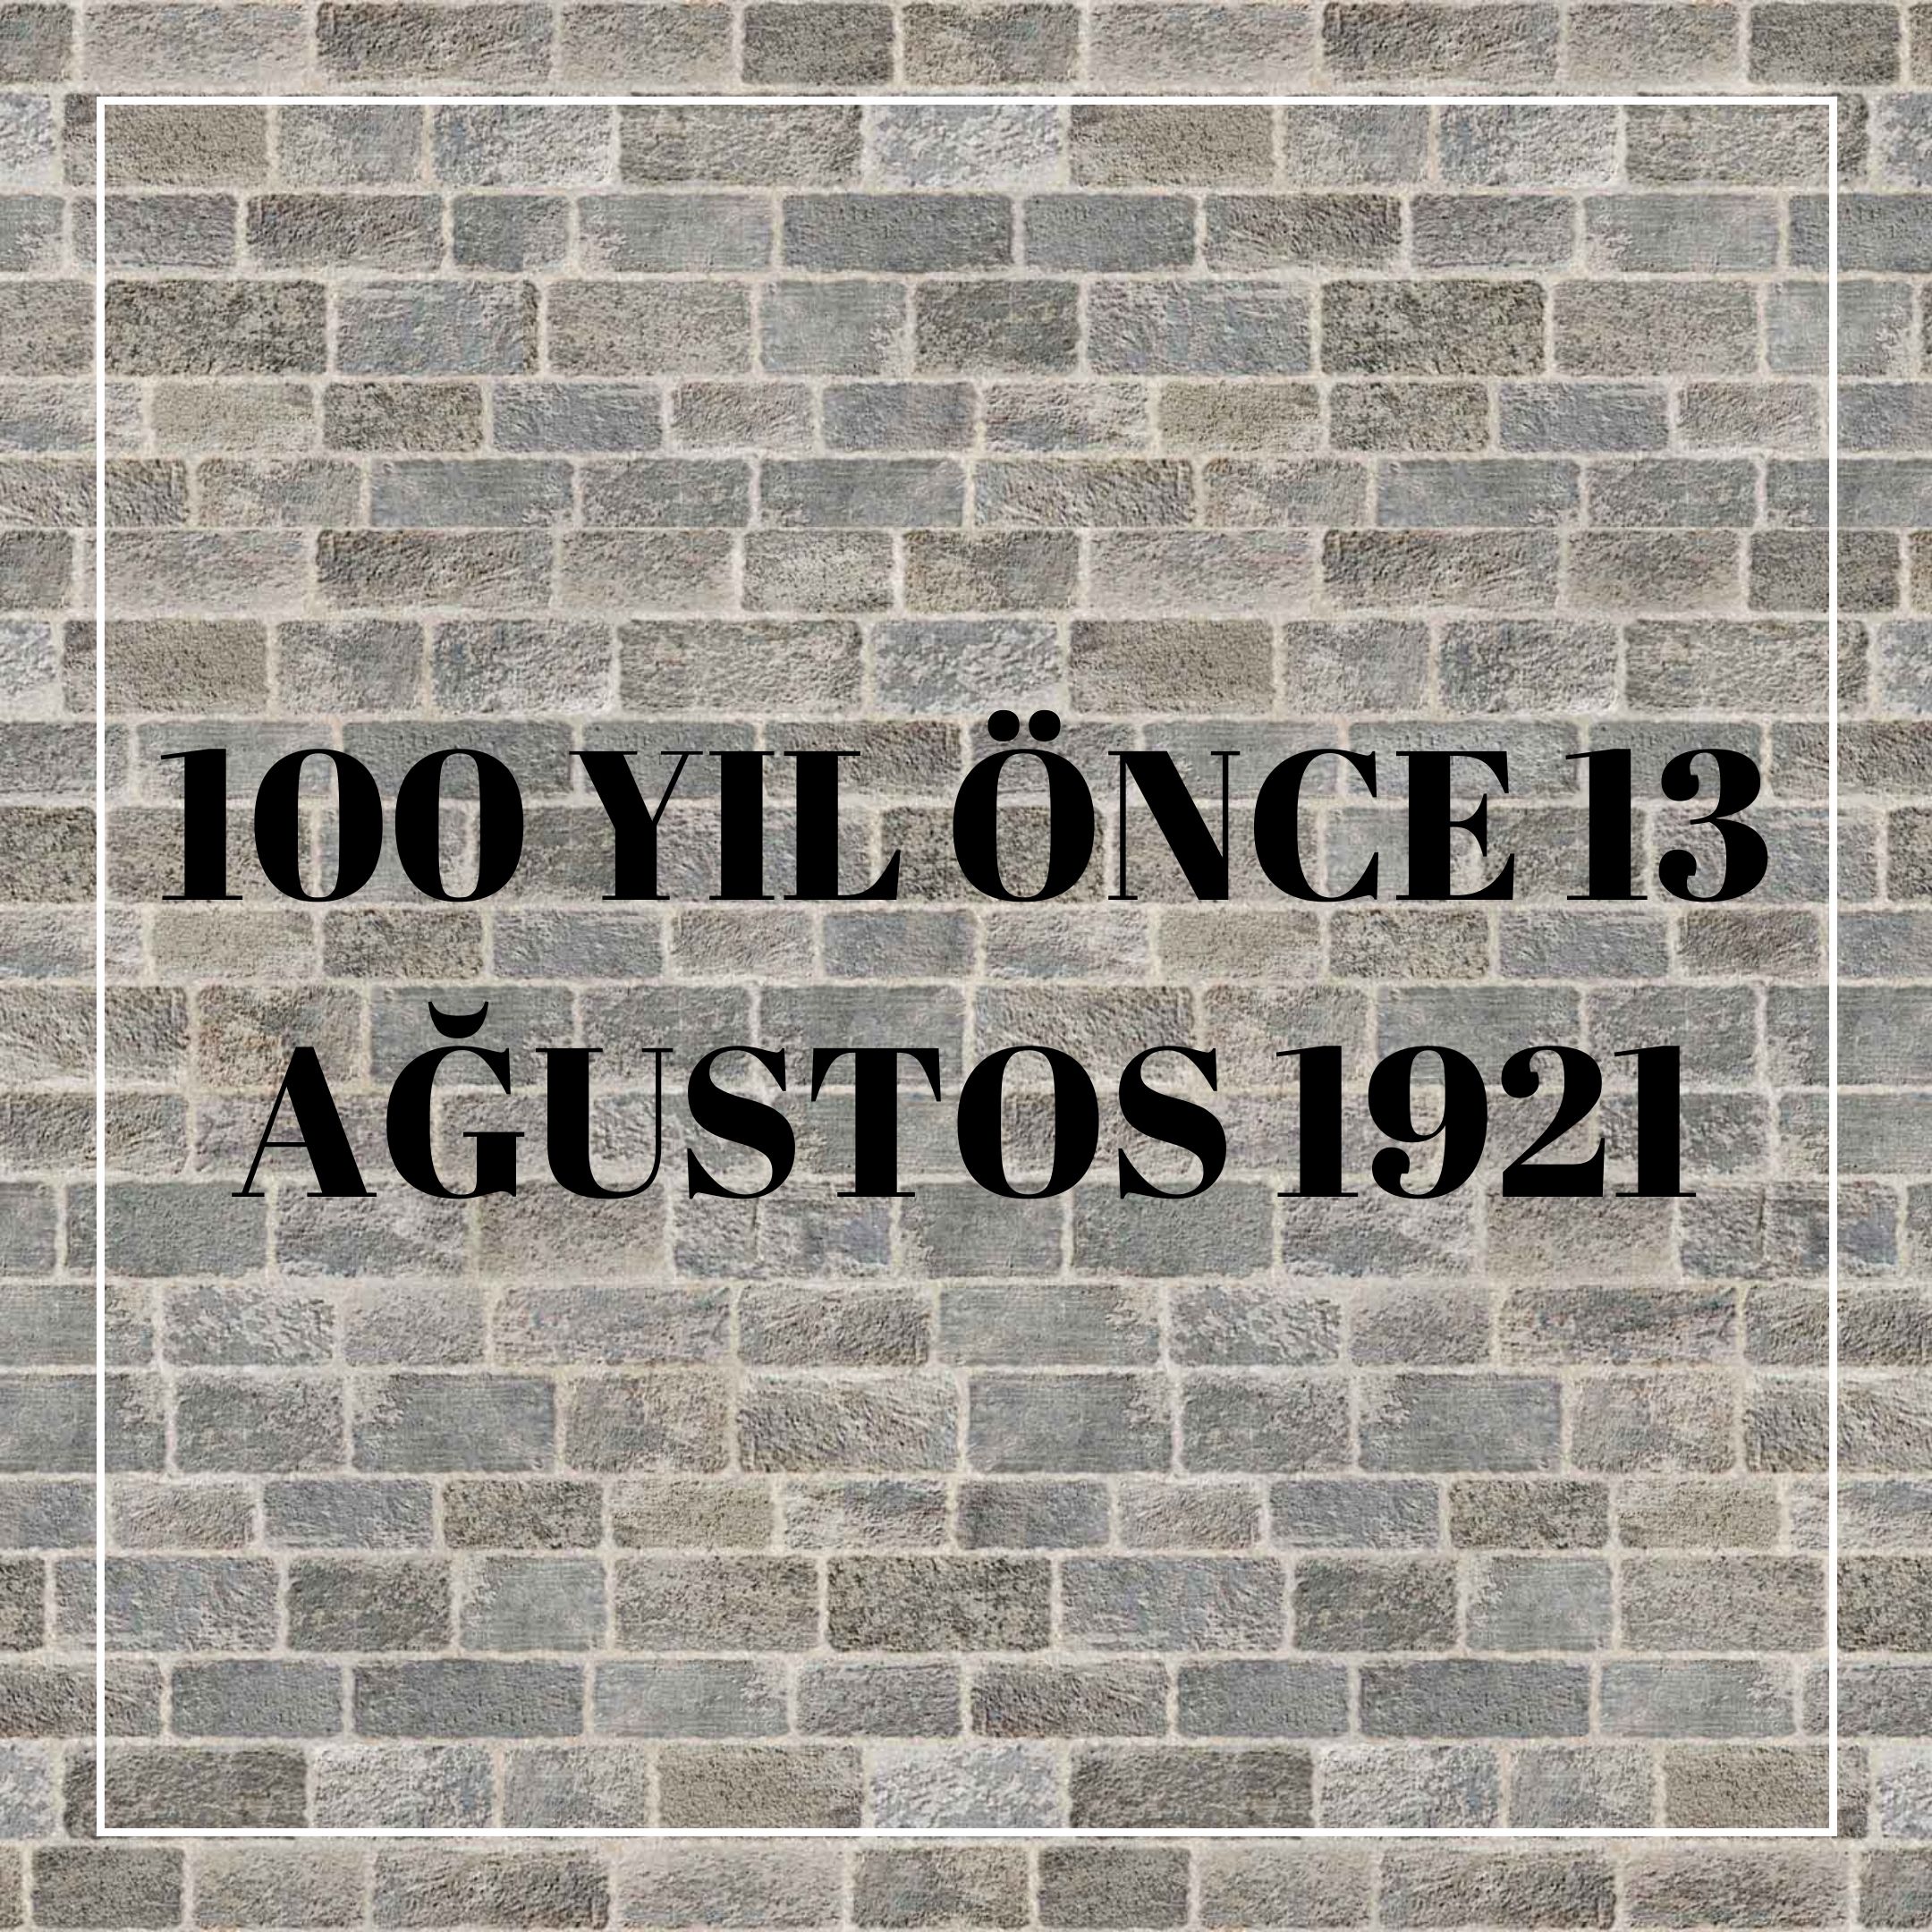 100 YIL ÖNCE 13 AĞUSTOS 1921